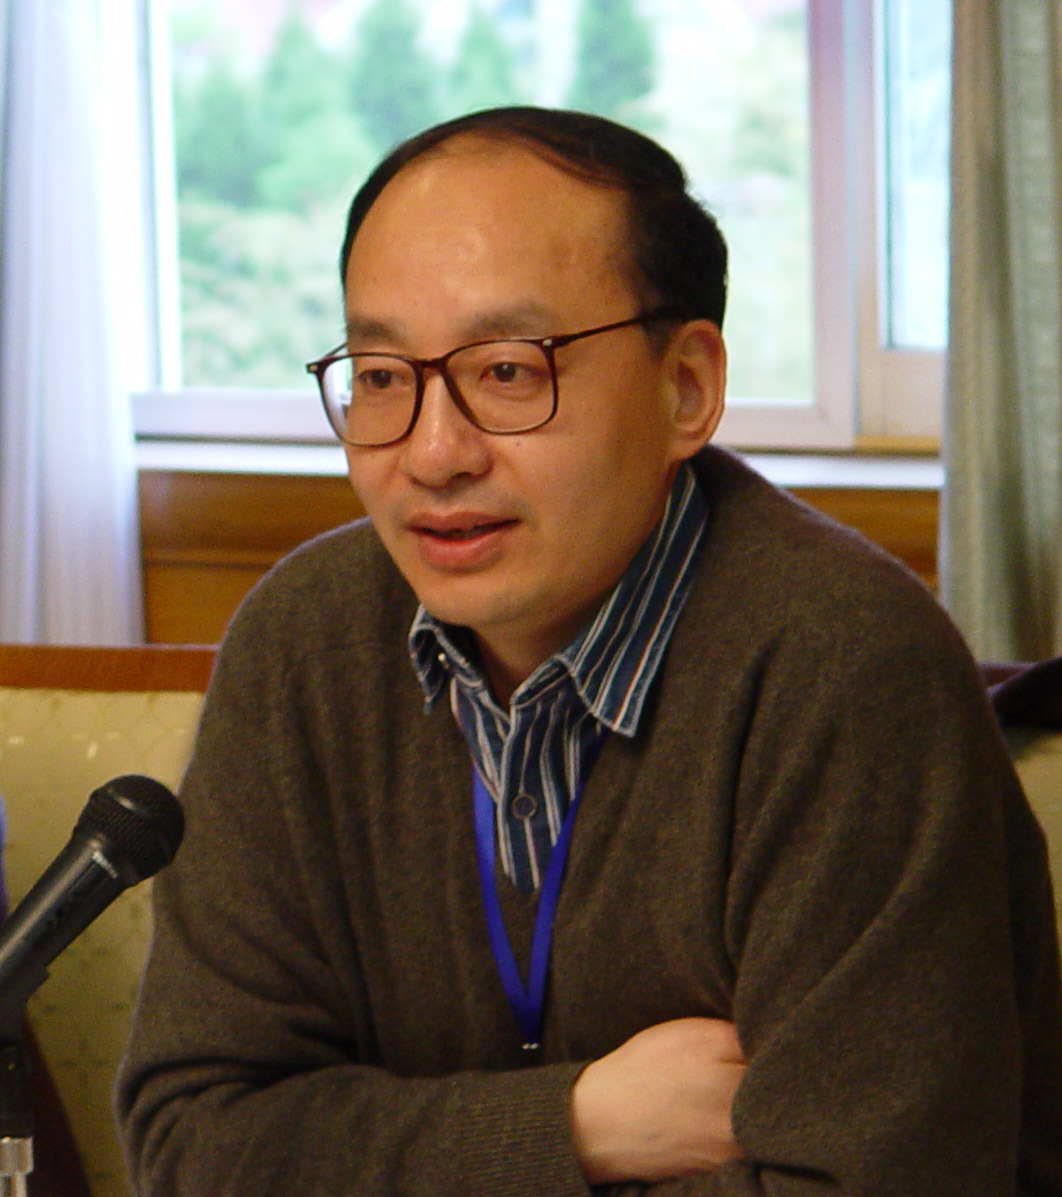 博士,教育部长江学者奖励计划特聘教授,曾任教于湘潭大学,南开大学